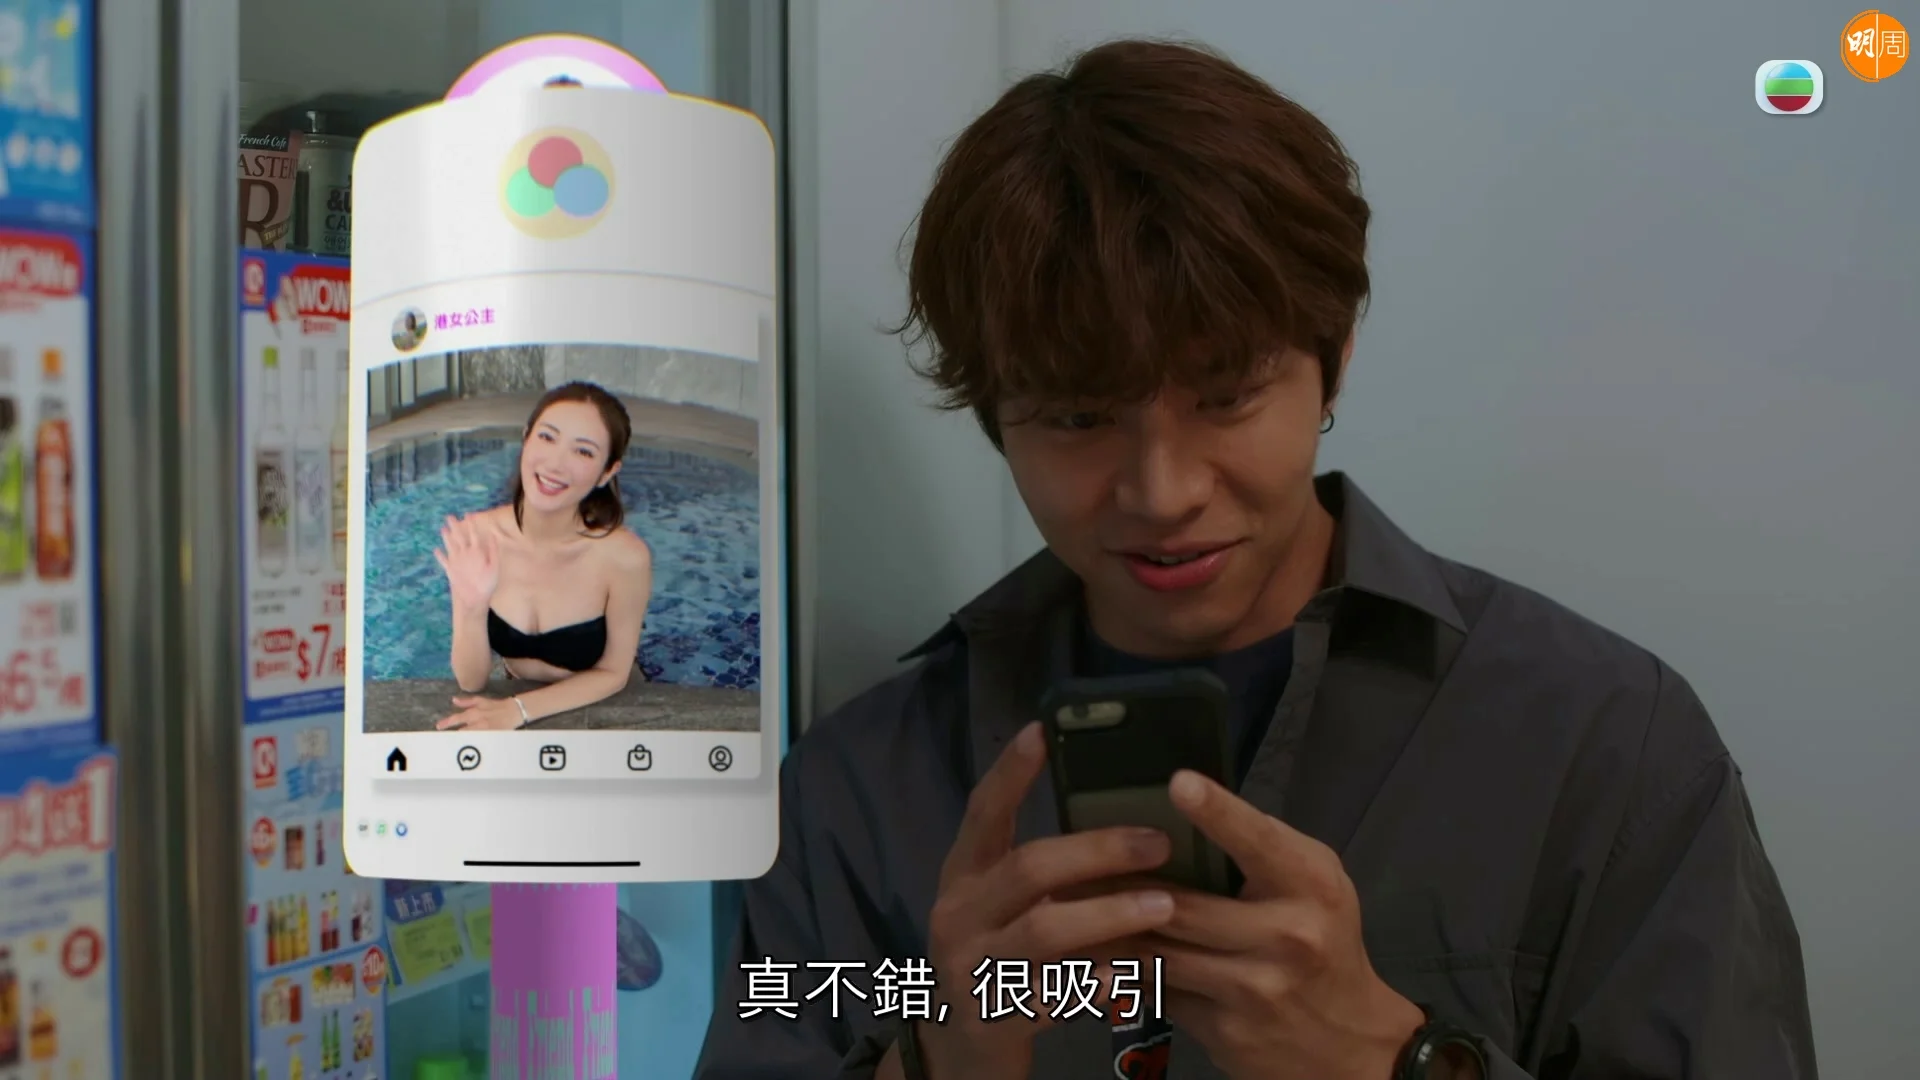 羅天宇在《婚後事》劇情中提及他靠交友手機程式「約炮」解決需要。